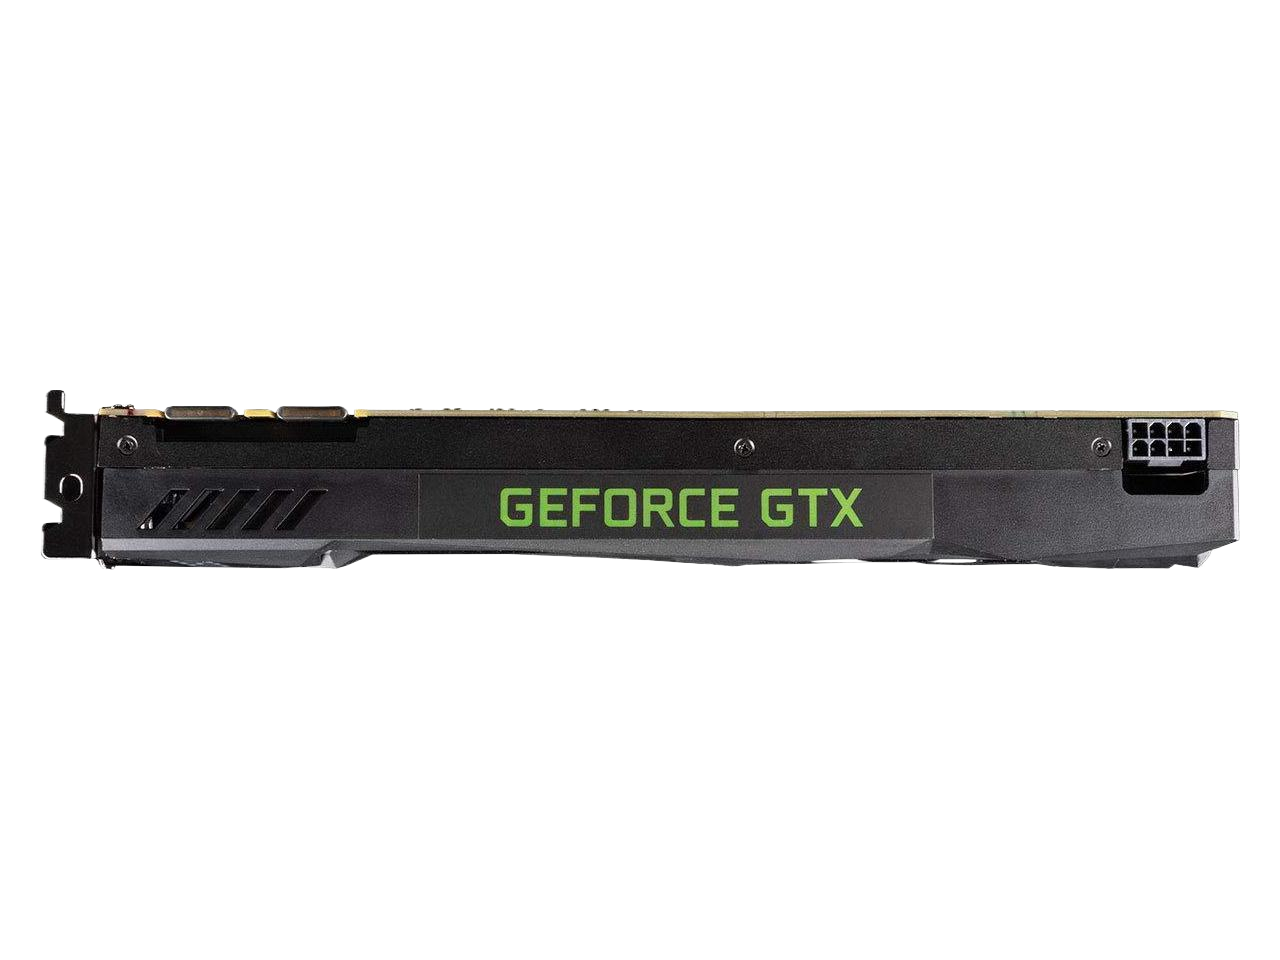 ZOTAC GeForce GTX 1080 Blower Video Graphics Card GPU ZT-P10800D